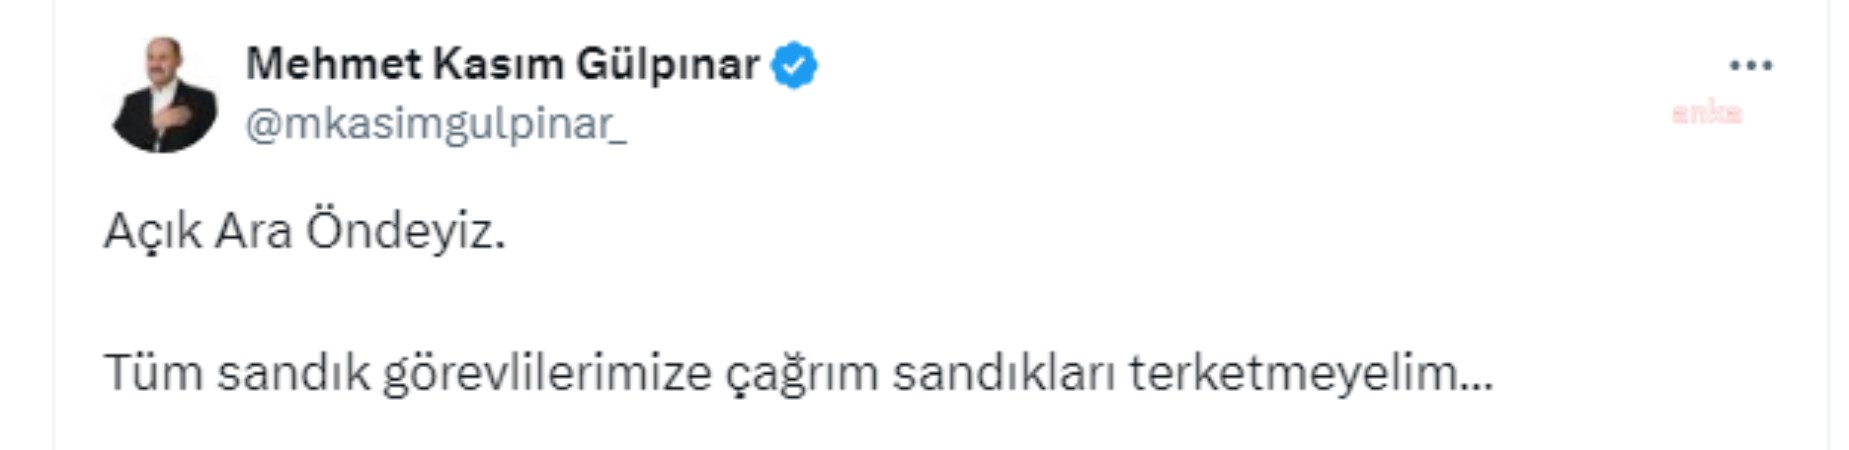 Yeniden Refah Partisi Şanlıurfa adayı Mehmet Kasım Gülpınar: 'Açık ara öndeyiz, sandıkları terk etmeyelim' - Son Dakika Siyaset Haberleri | Cumhuriyet